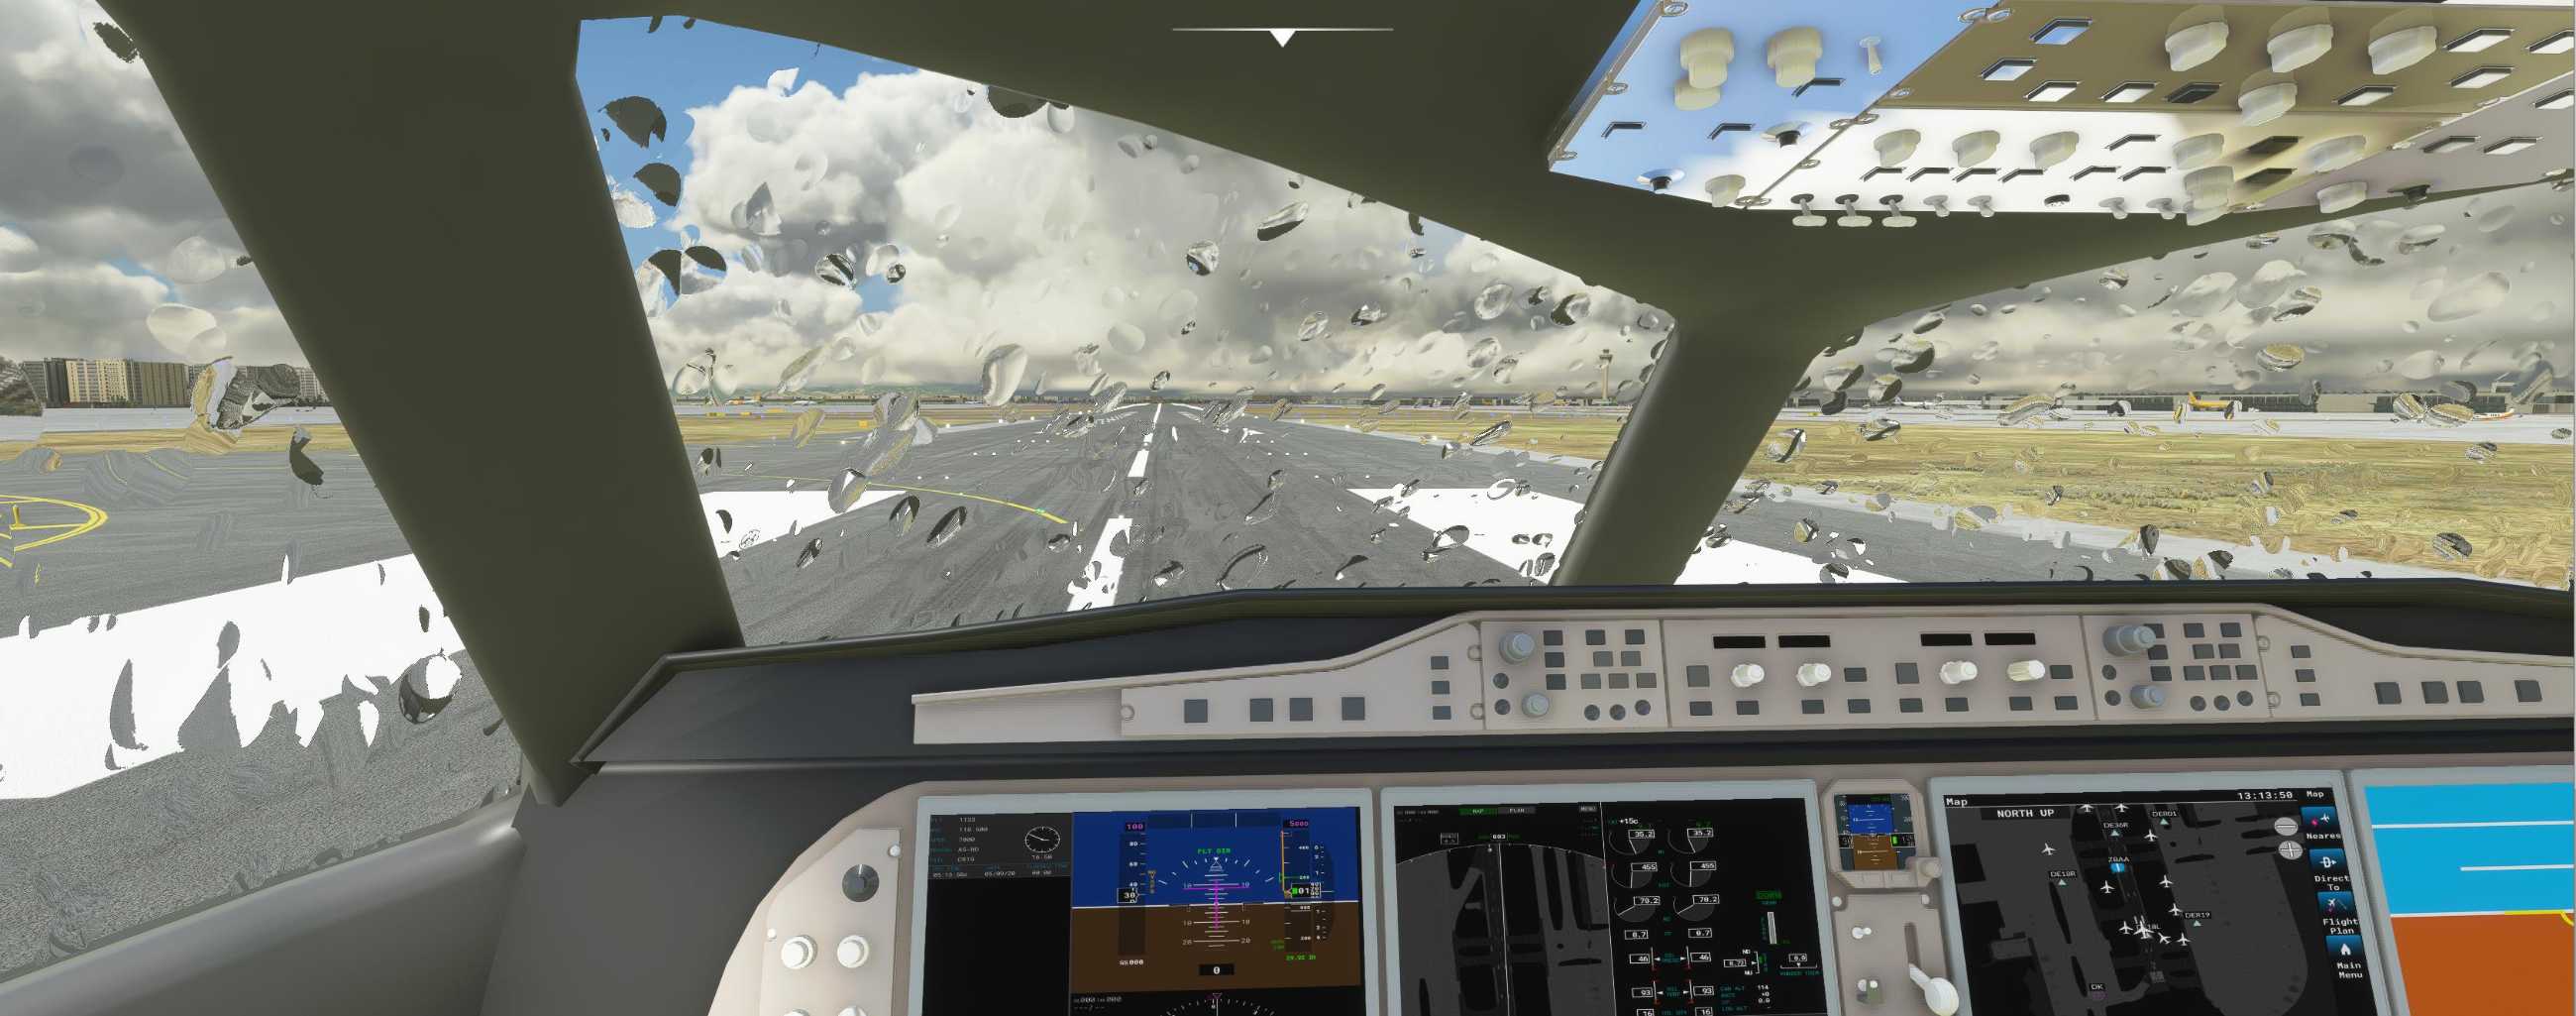 FYCYC-C919 国产大飞机机模 微软模拟飞行演示-4257 